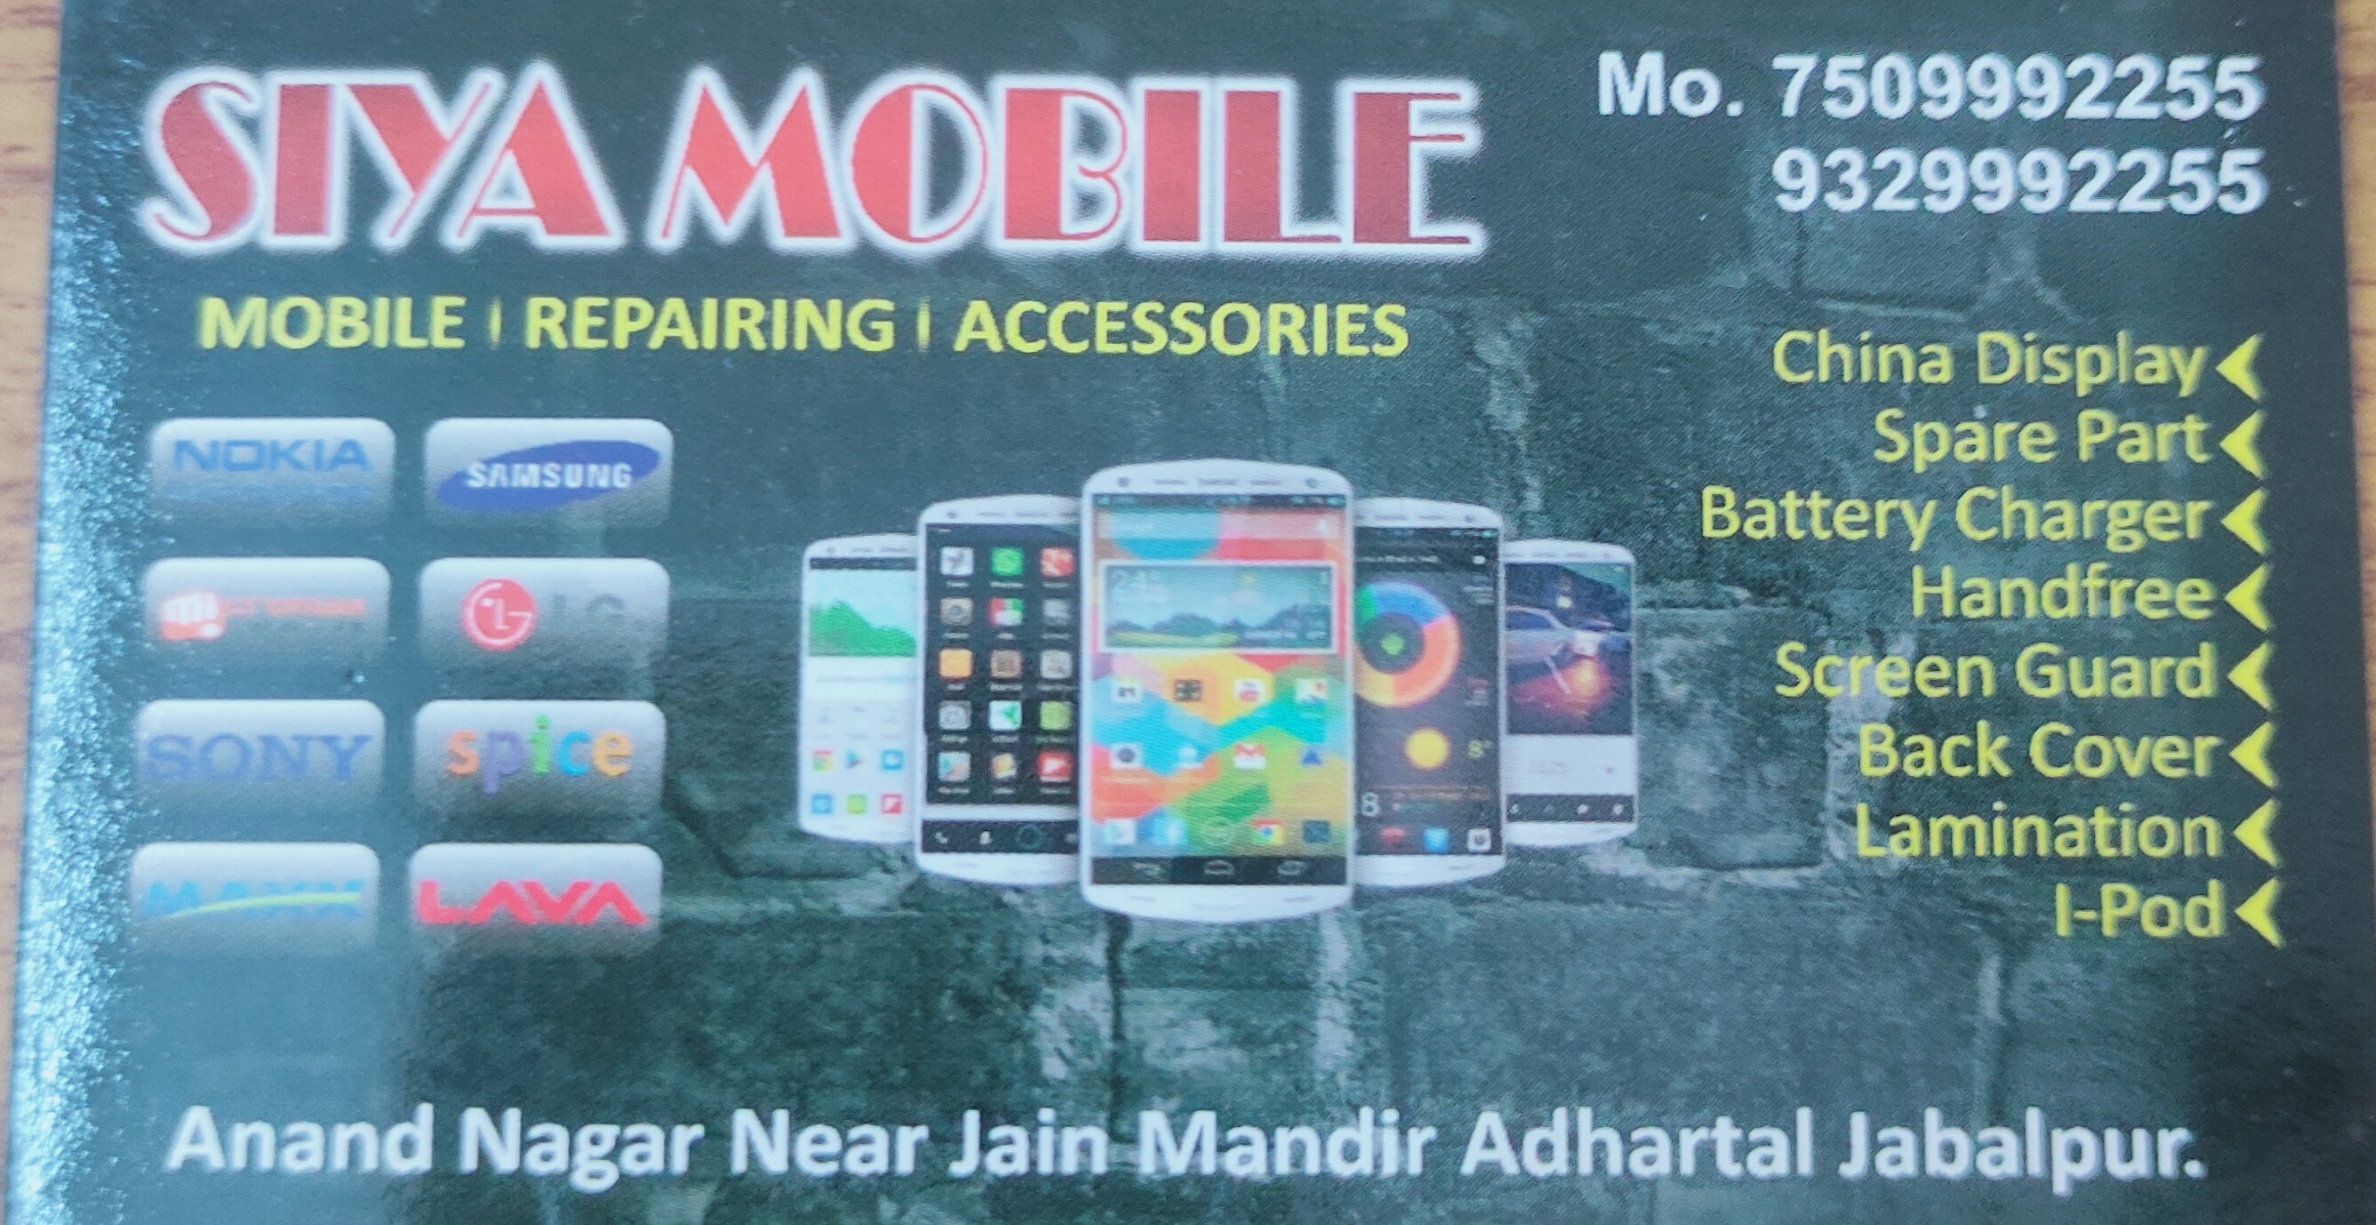 Siya Mobile Jabalpur